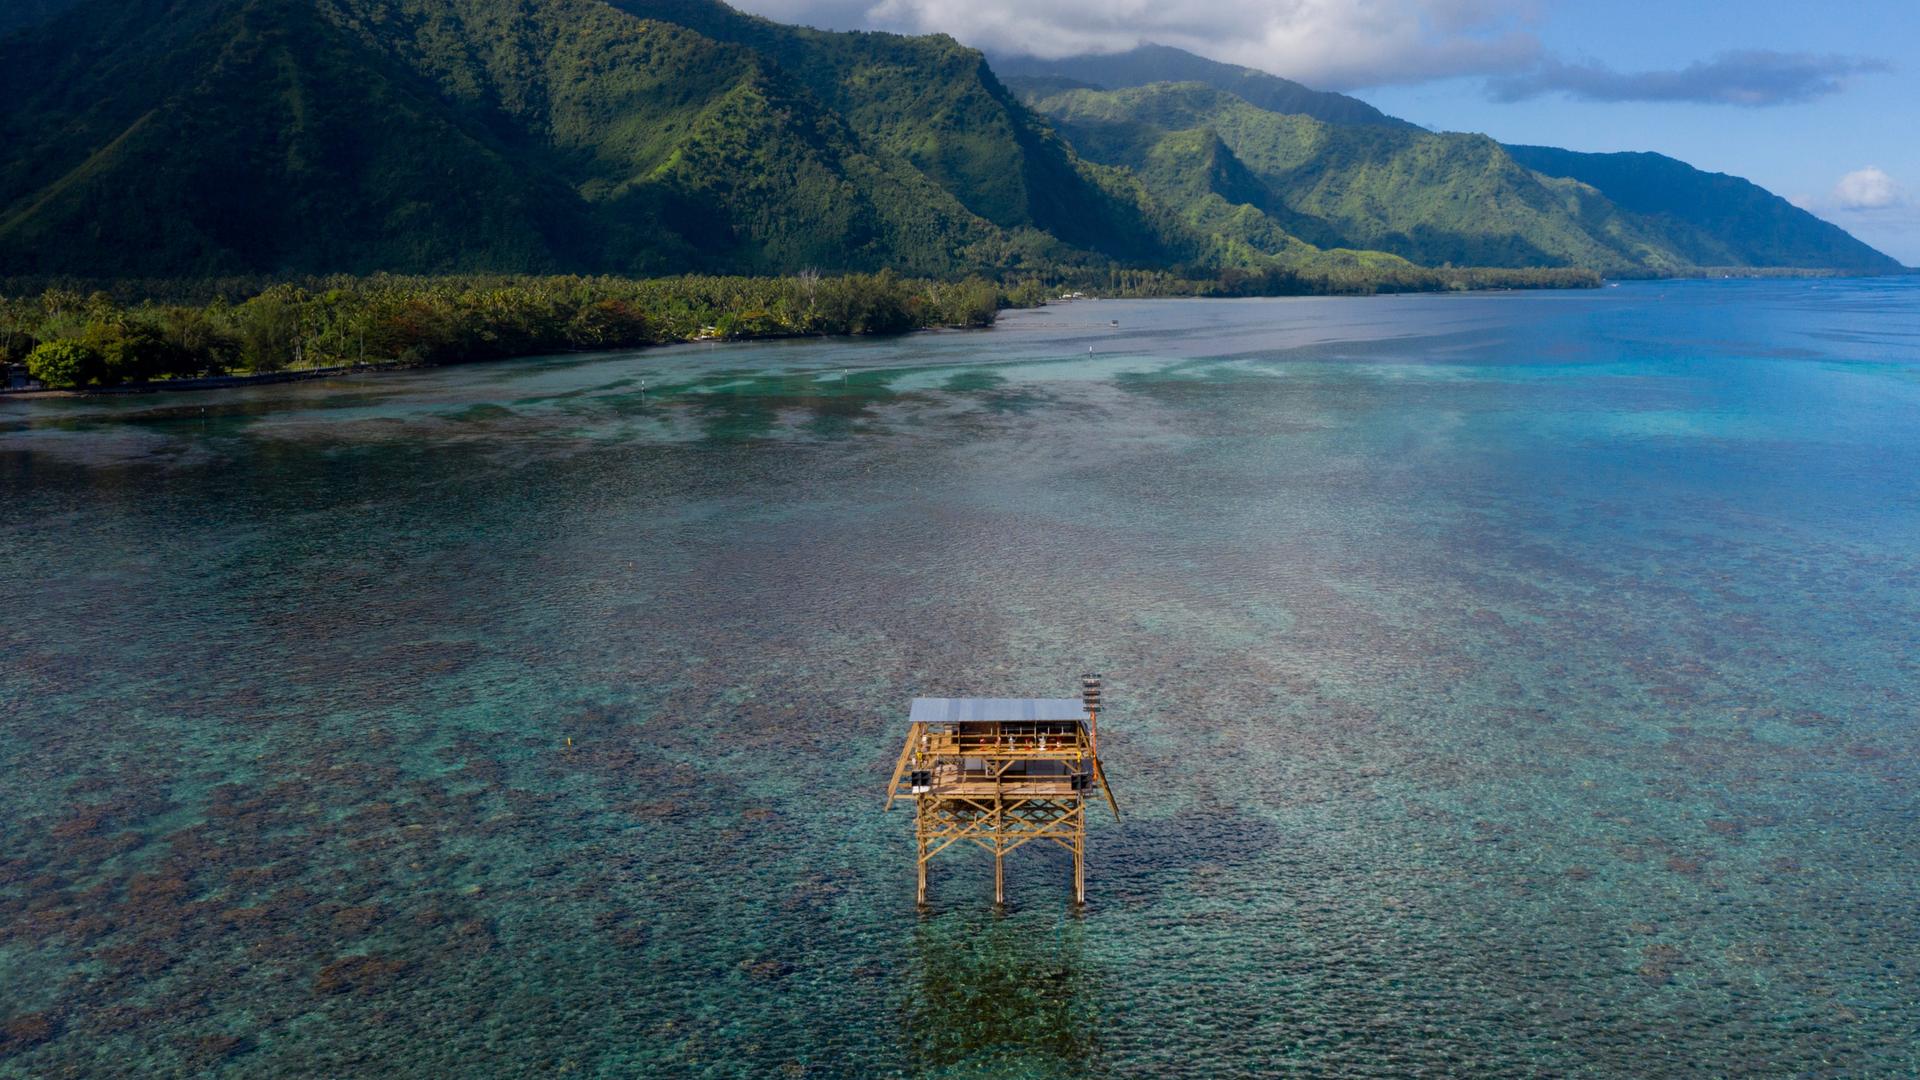 Vor der Küste von Teahupo'o (Tahiti) steht ein Holzturm, der bei Surf-Wettbewerben das Wertungsgericht beheimatet.